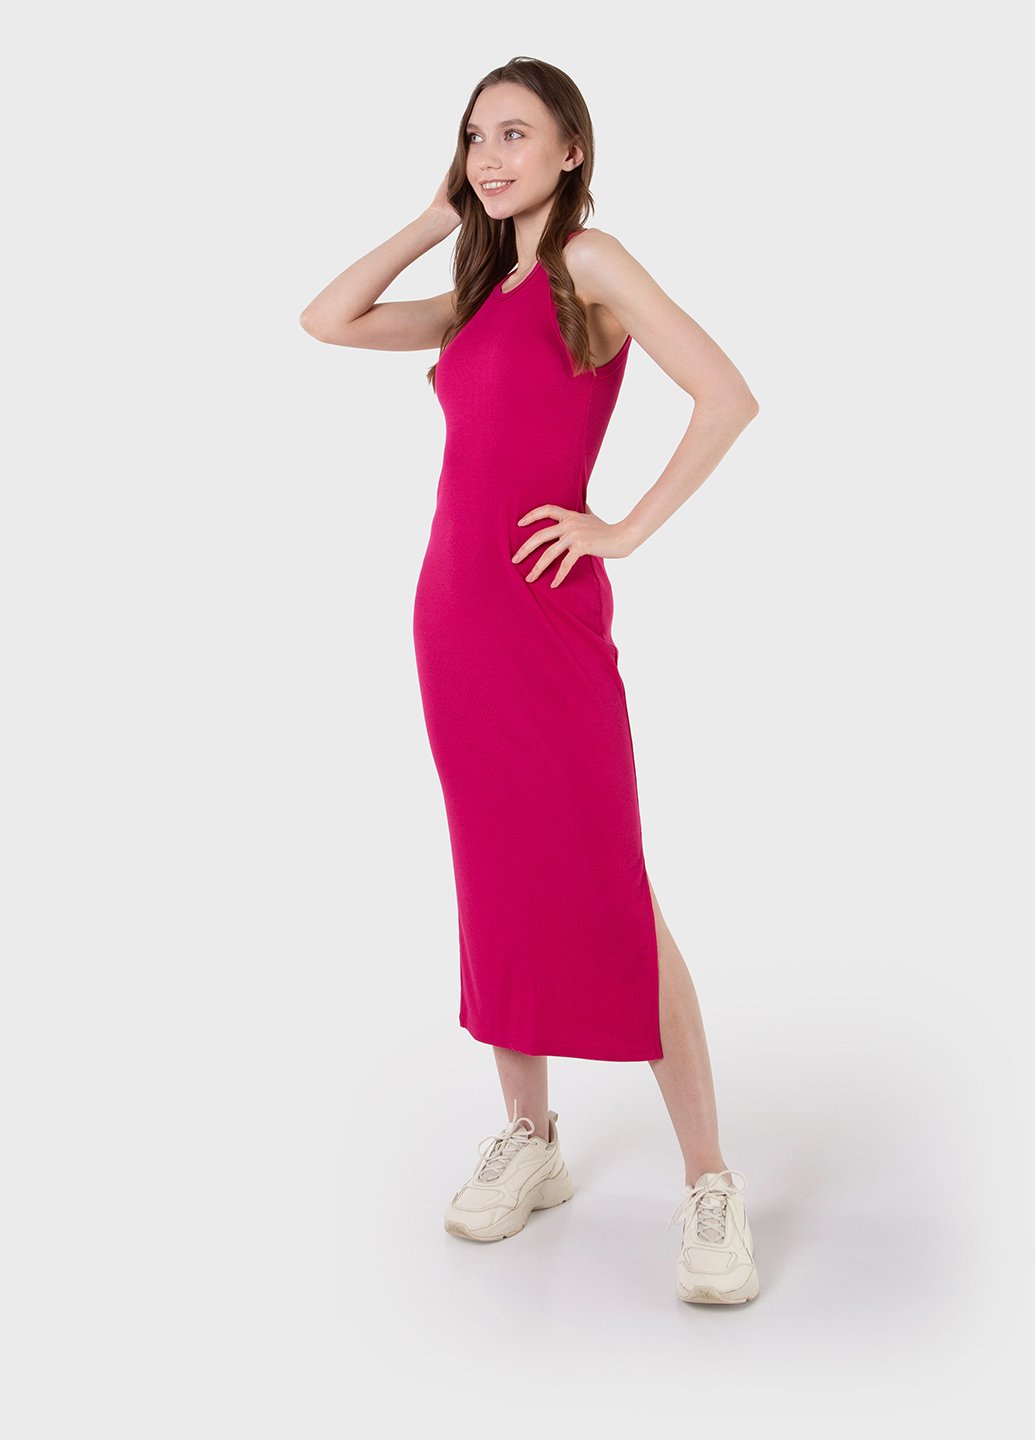 Купить Длинное платье-майка в рубчик розовое Merlini Лонга 700000108 размер 42-44 (S-M) в интернет-магазине